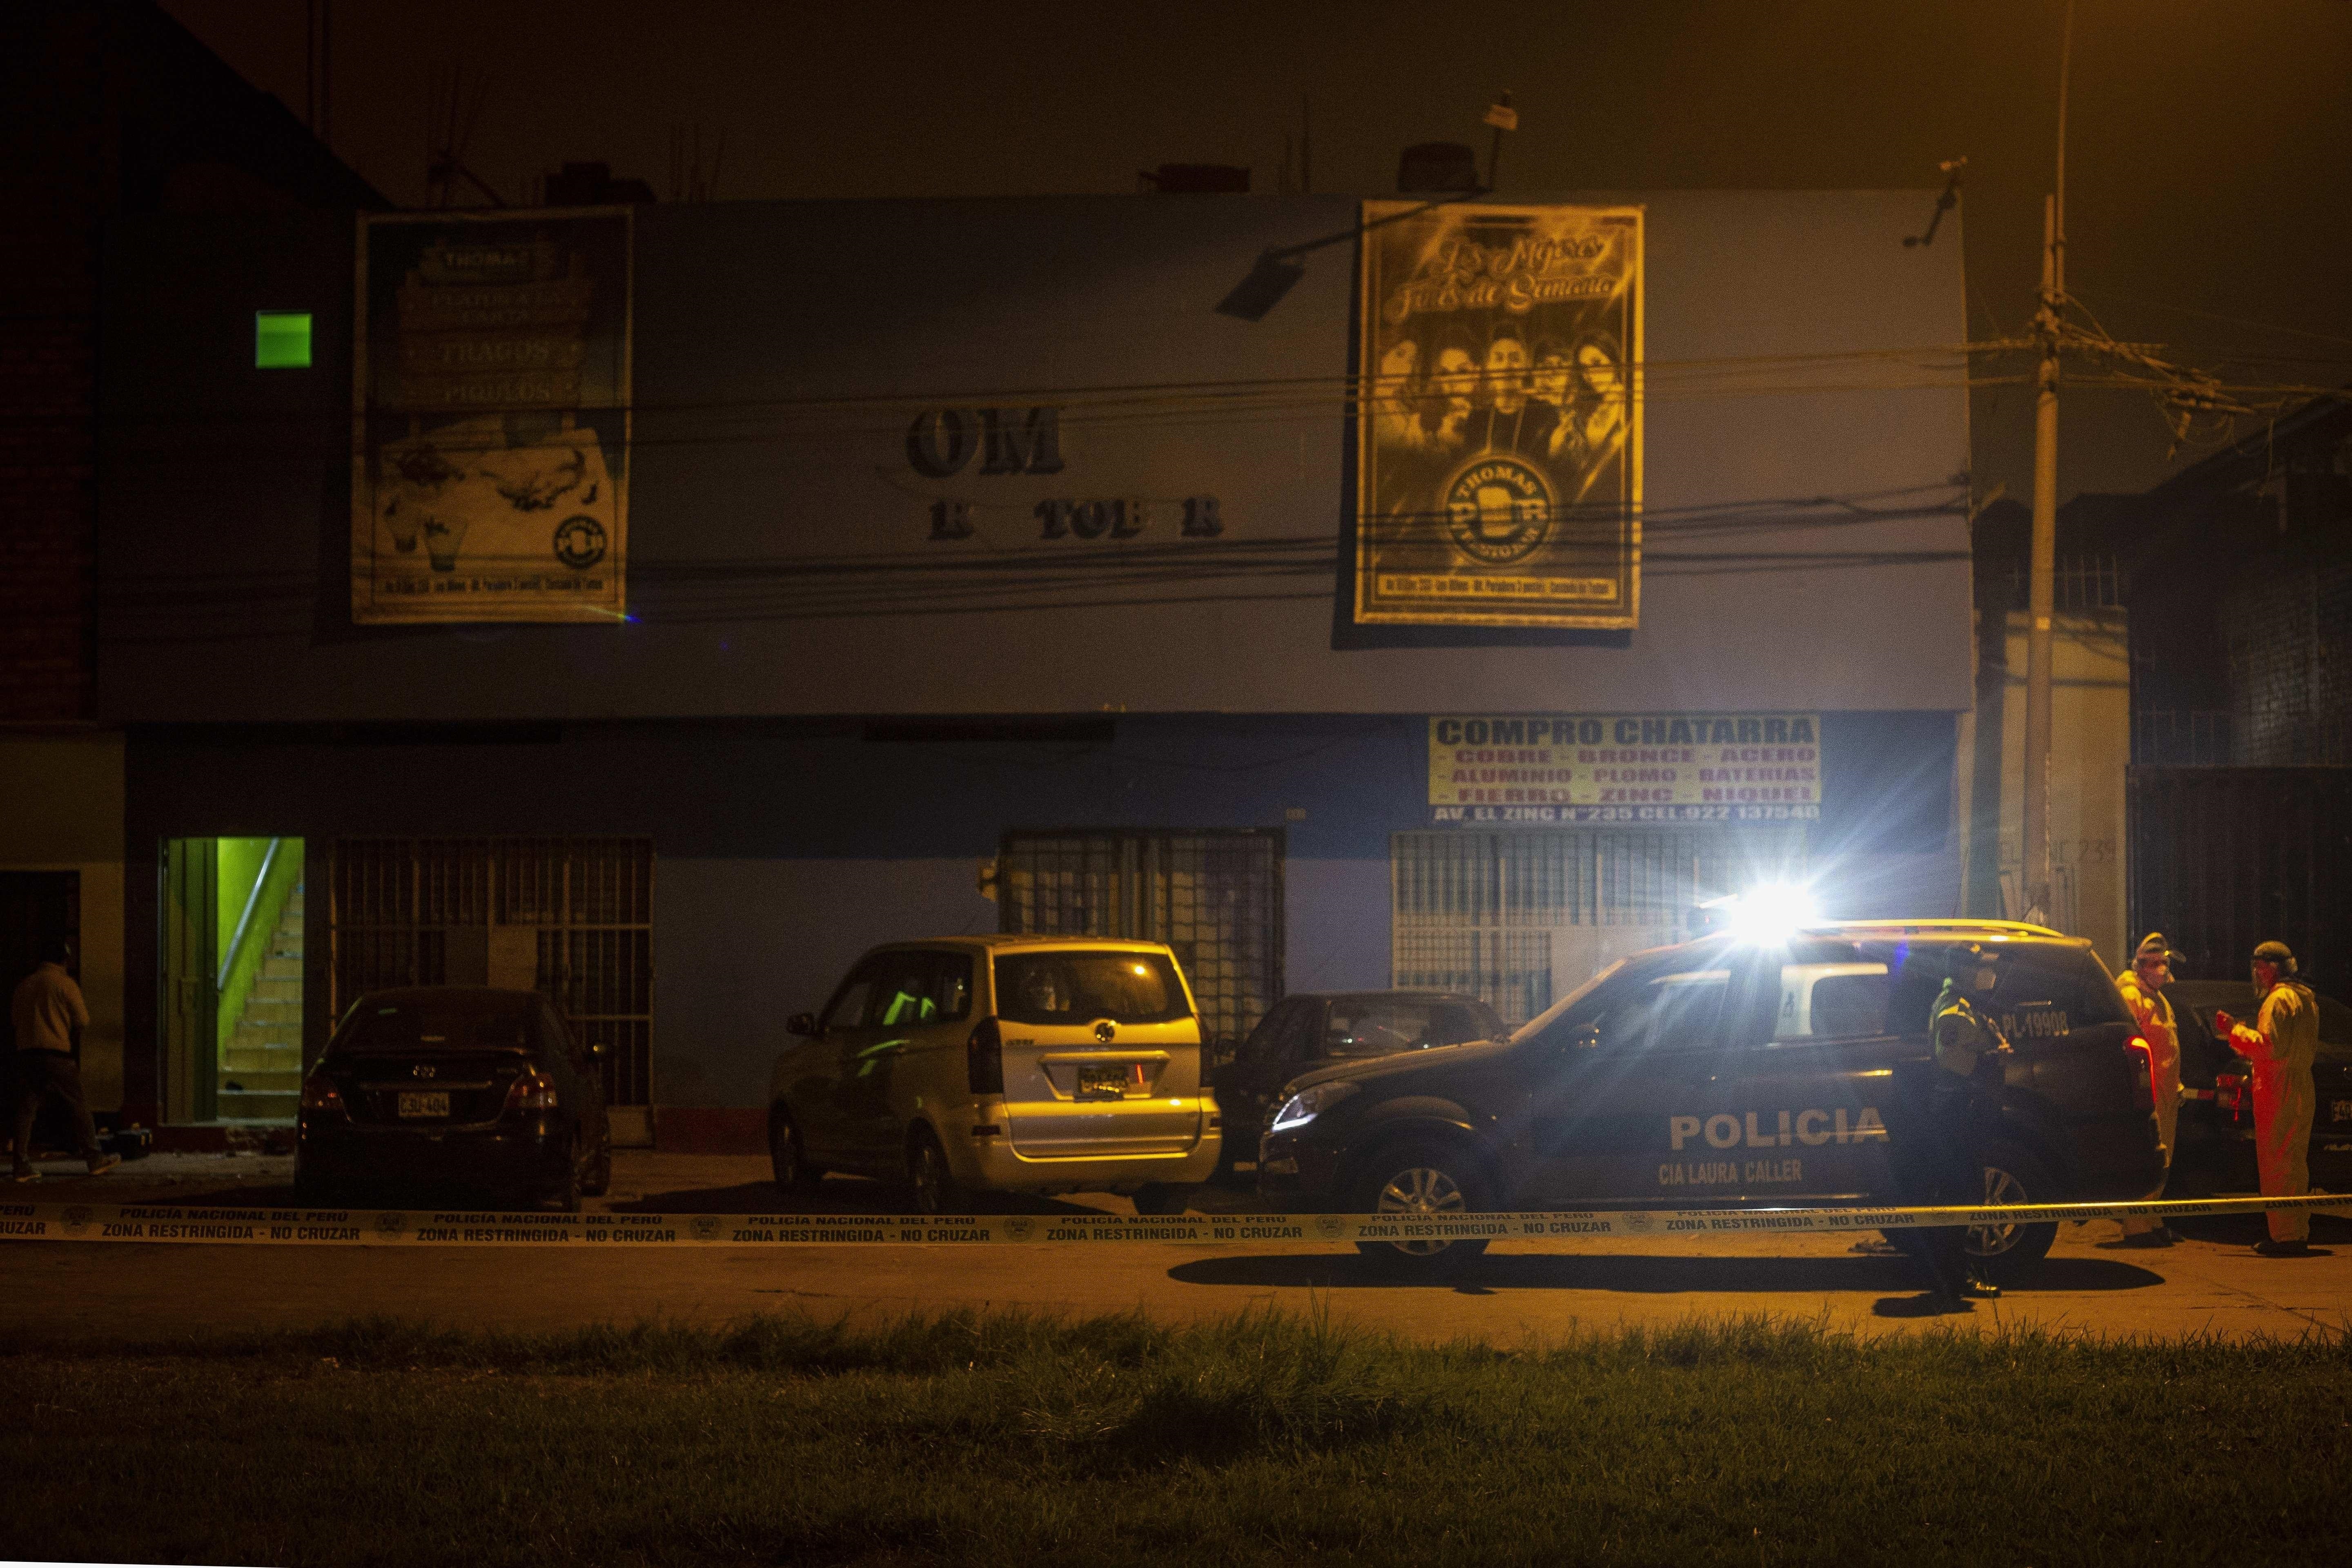 Policía peruana mintió sobre el operativo que dejó al menos 13 muertos en una discoteca